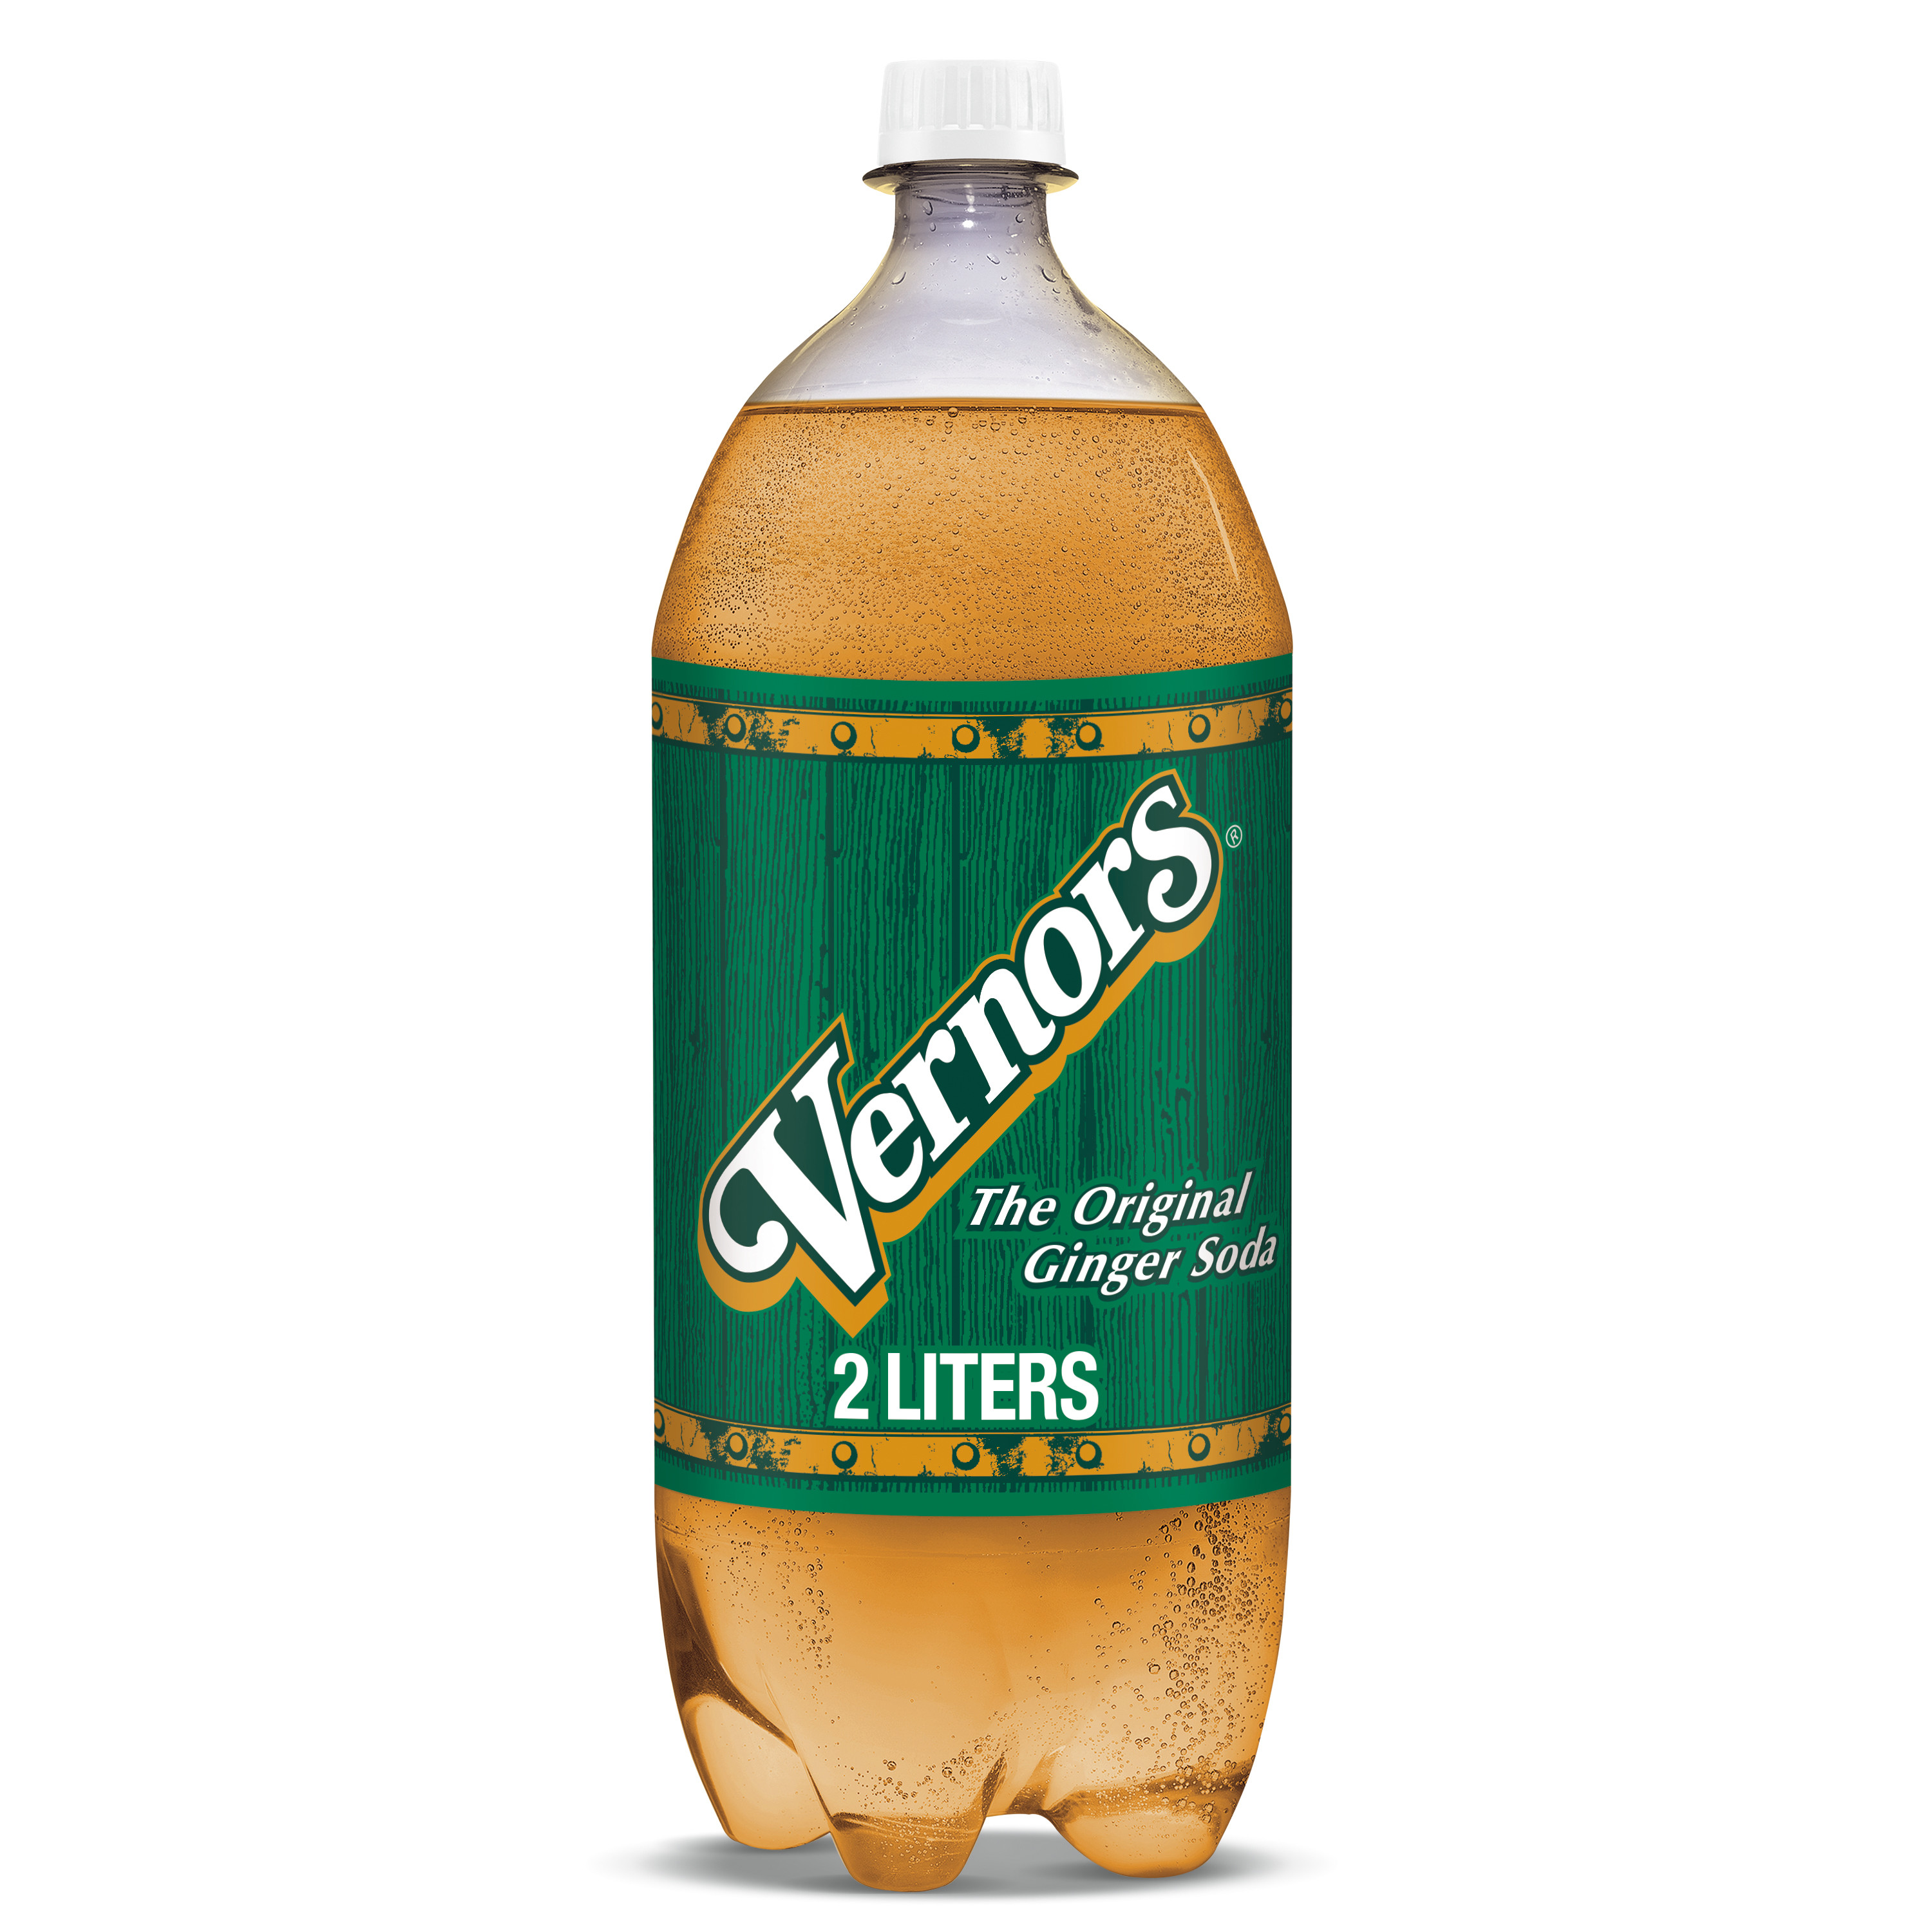 Vernors Caffeine Free Ginger Ale Soda Pop, 2 L, Bottle - image 1 of 11